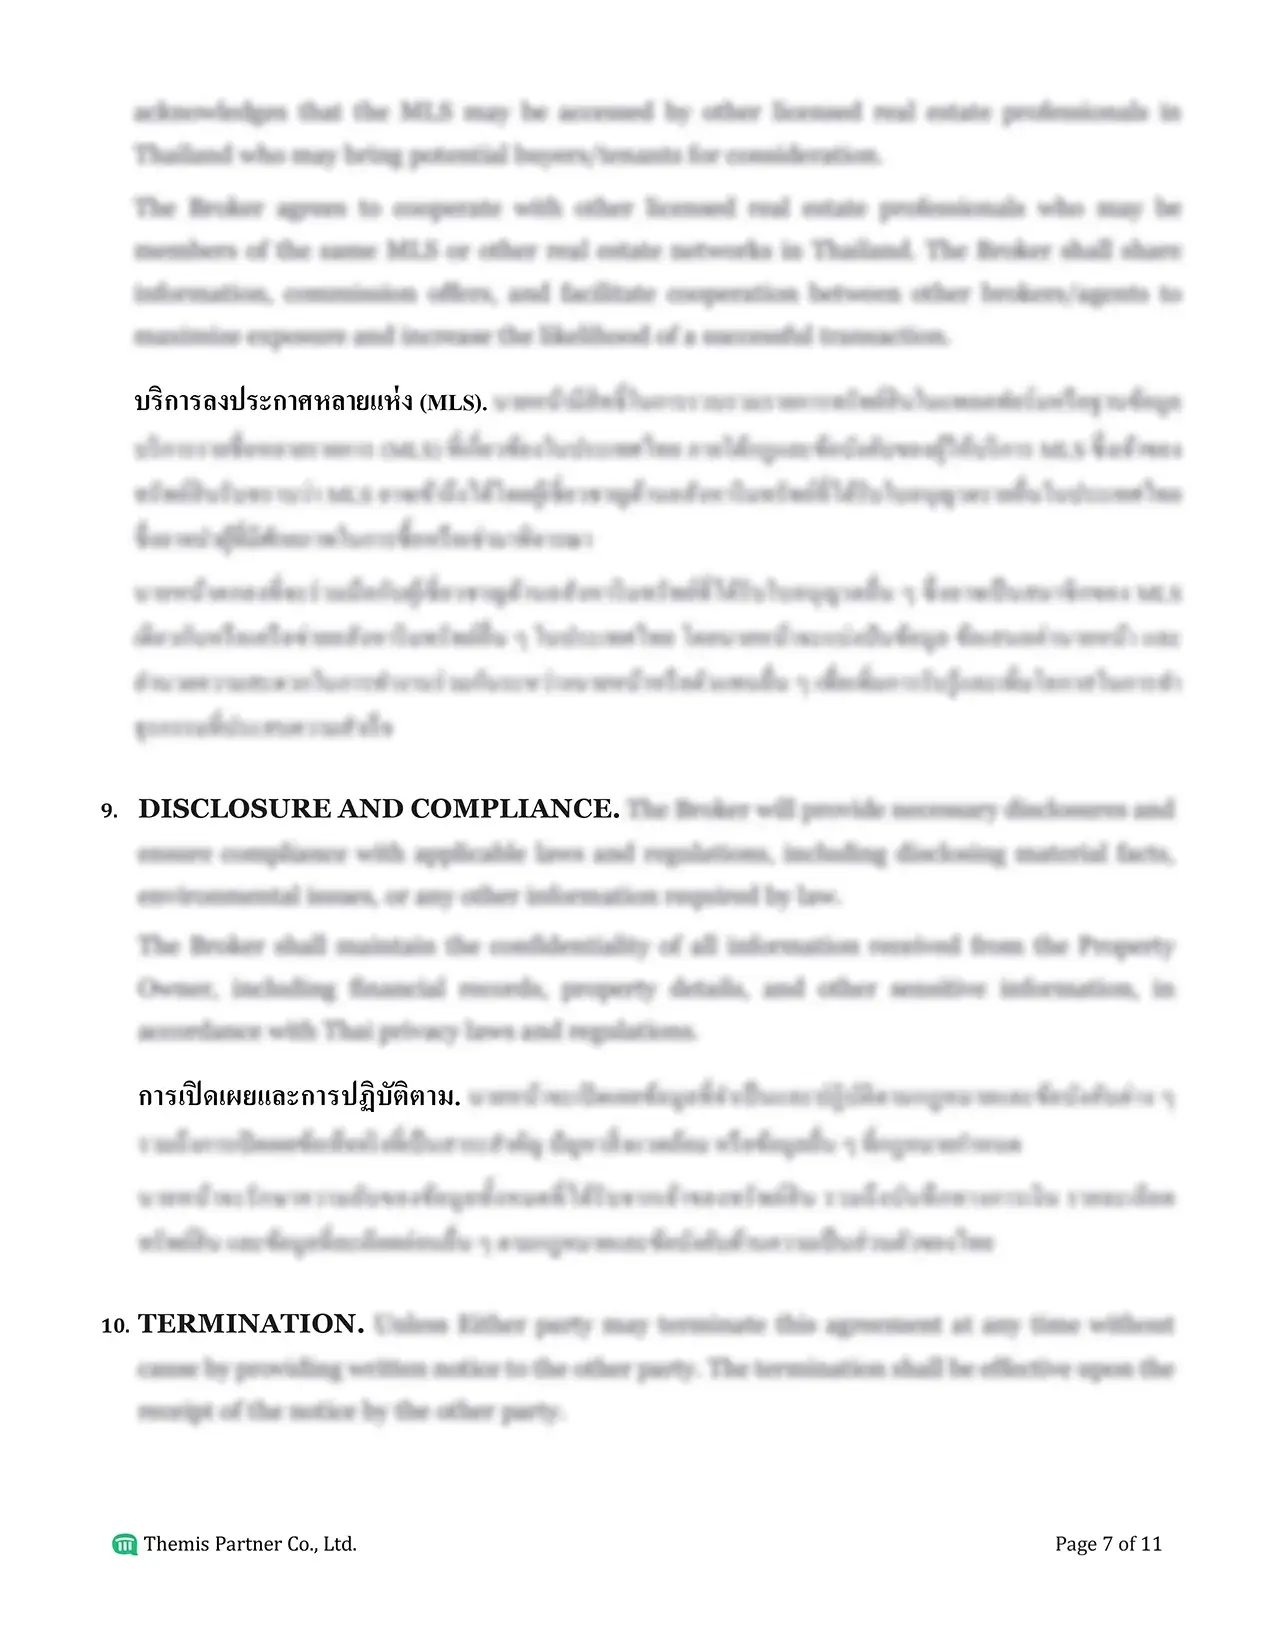 Brokerage agreement Thailand 7